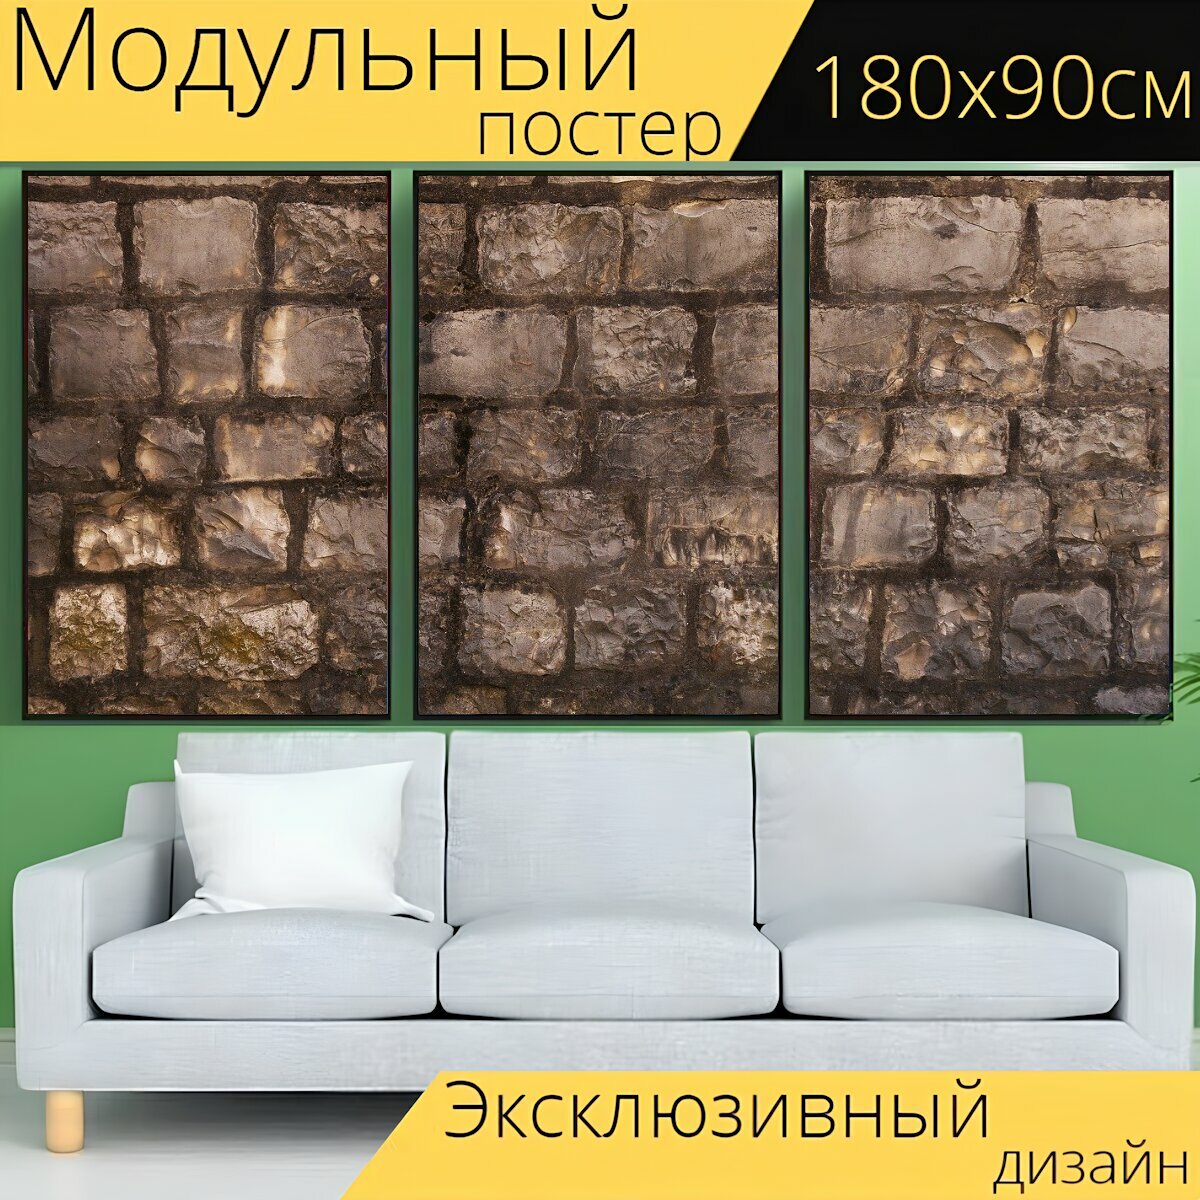 Модульный постер "Каменная стена, бутовый камень, стена завершения" 180 x 90 см. для интерьера